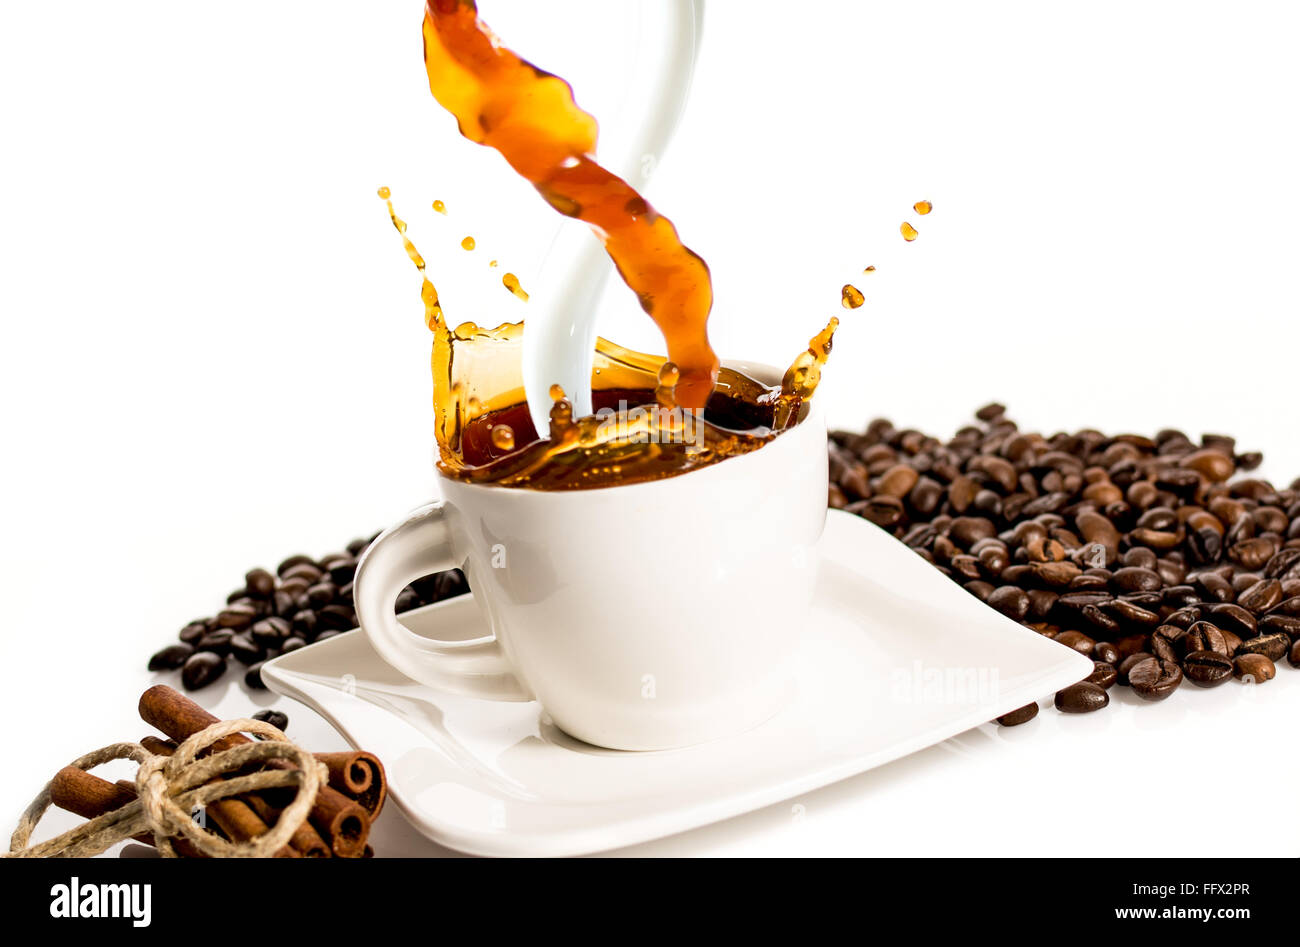 Archivo:Taza de café con leche.jpg - Wikipedia, la enciclopedia libre